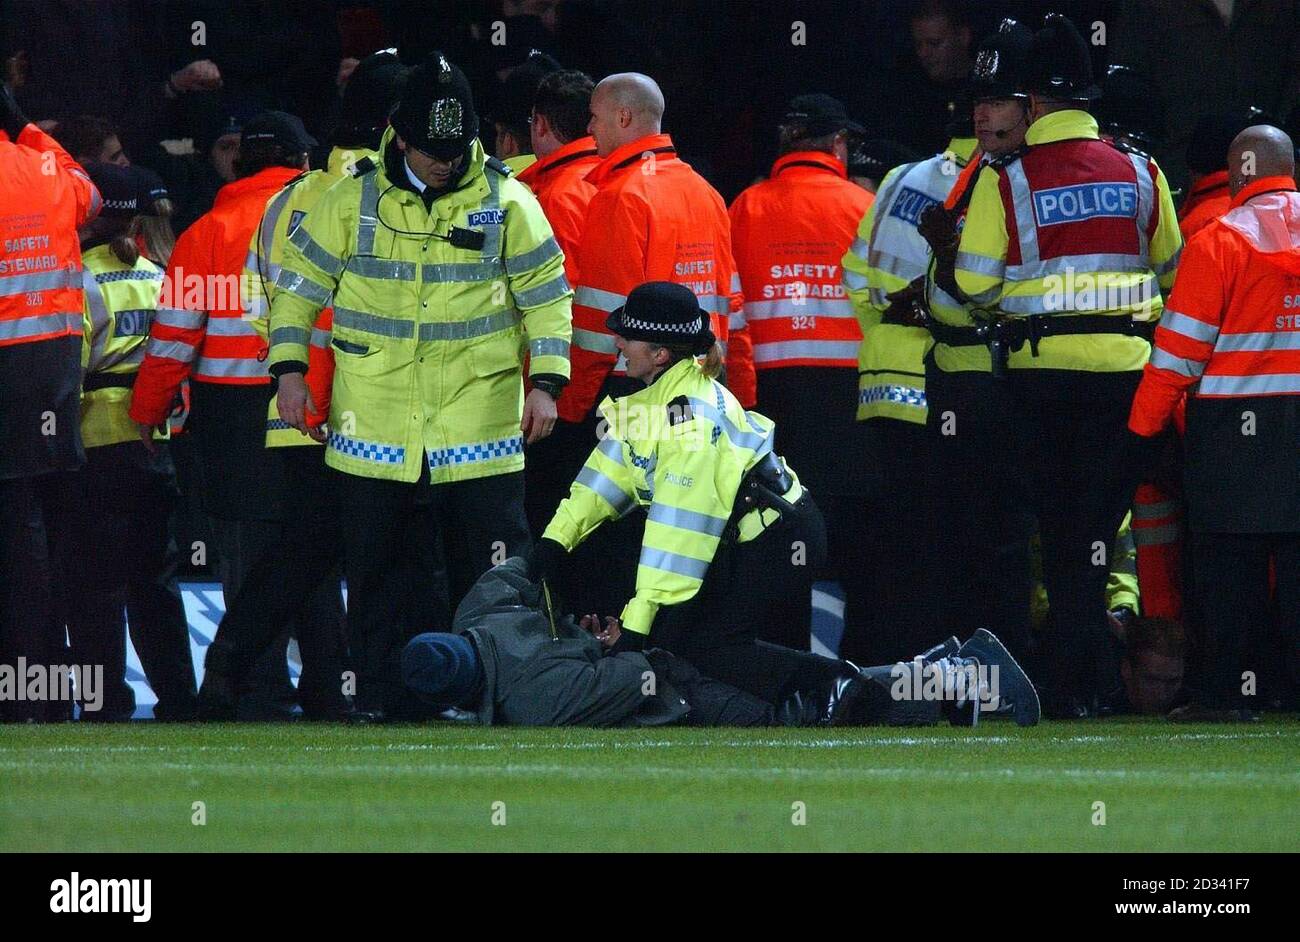 La polizia si riposa sui tifosi entusiasti durante la terza partita della fa Cup tra Southampton e Tottenham Hotspur al St Marys Stadium. QUESTA IMMAGINE PUÒ ESSERE UTILIZZATA SOLO NEL CONTESTO DI UNA FUNZIONE EDITORIALE. NESSUN UTILIZZO DI SITI WEB/INTERNET A MENO CHE IL SITO NON SIA REGISTRATO PRESSO LA FOOTBALL ASSOCIATION PREMIER LEAGUE. Foto Stock